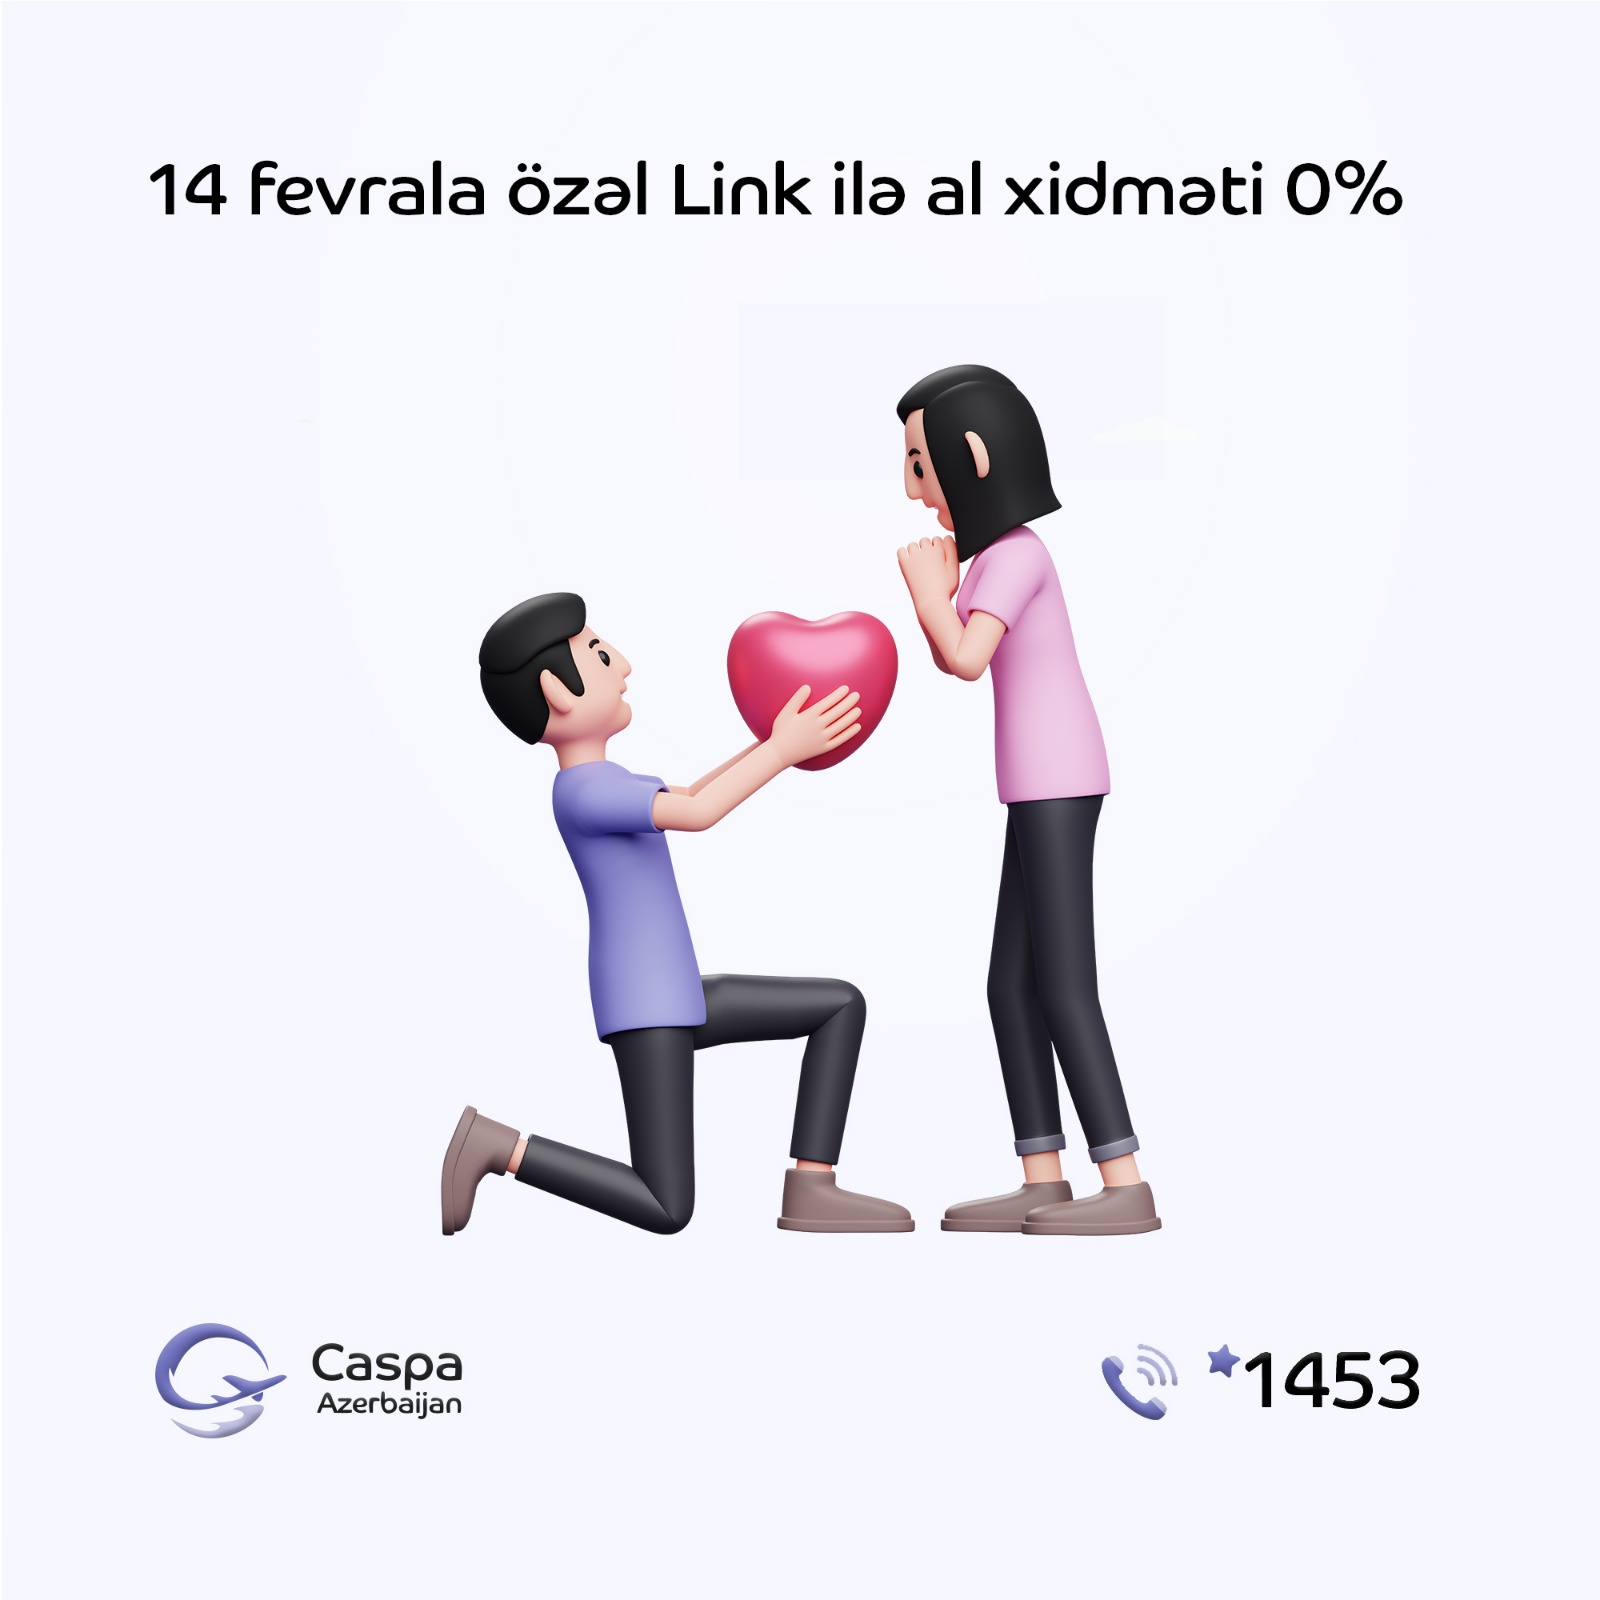 Caspa.az - da “Link ilə” al xidməti yenə 0% komissiya ilə həyata keçirilir